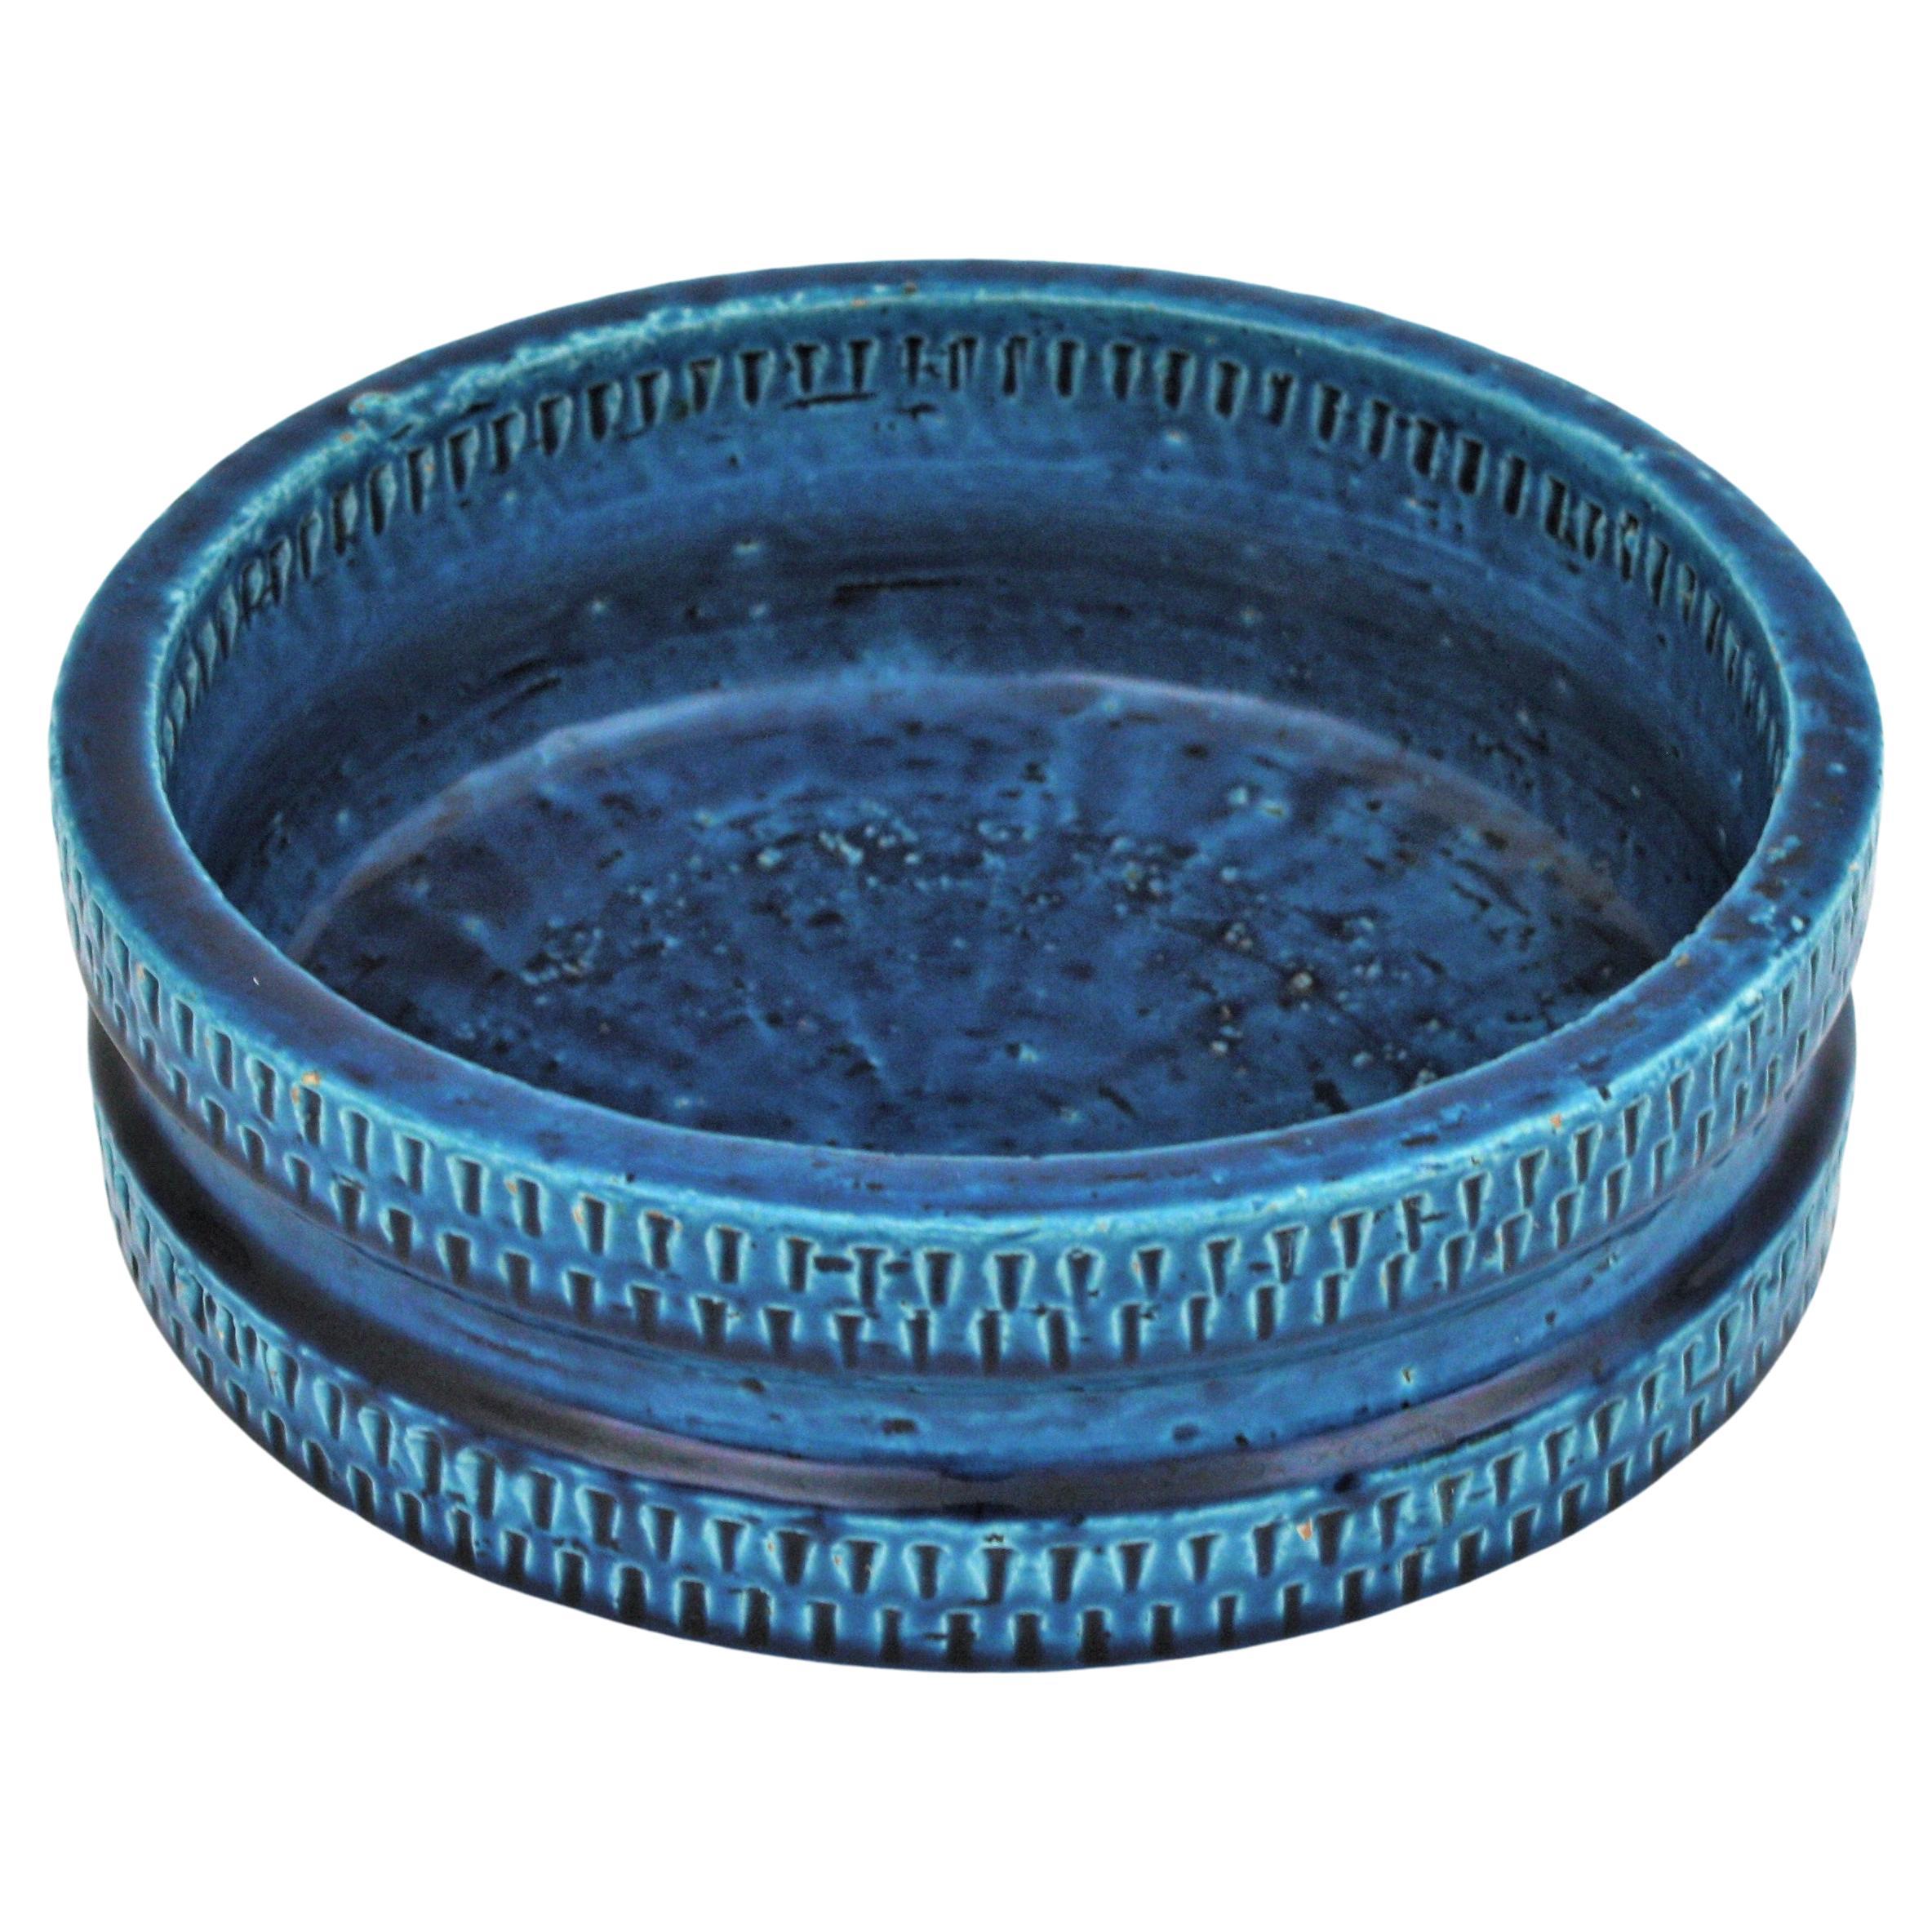 Grand bol rond/centre de table en céramique émaillée bleue (Rimini Blu), fabriqué par A.I.C Ceramiche Italy, années 1950-1960.
Il n'est pas sans rappeler les designs d'Aldo Londi et de Bitossi. 
Fabriqué à la main en Italie avec un design